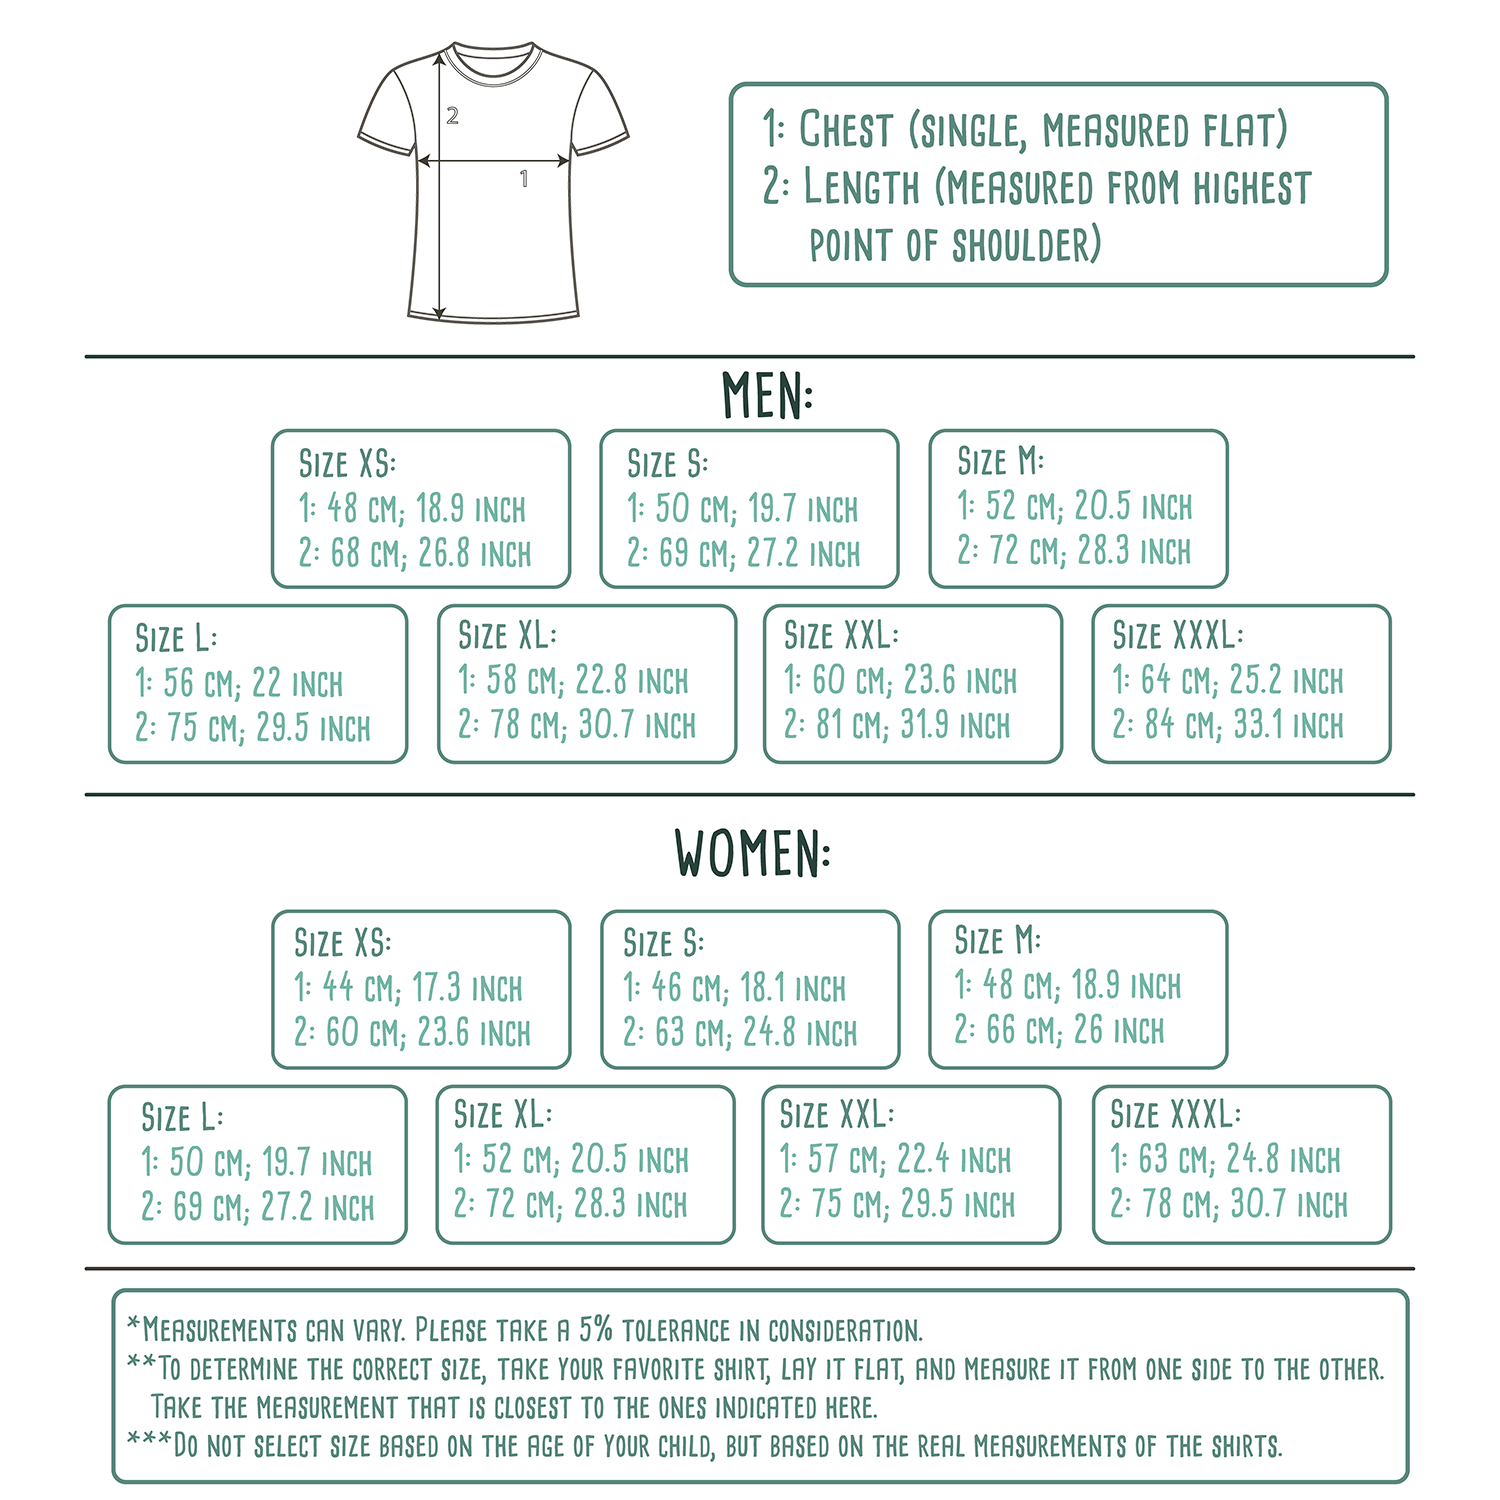 Colourblock cut and sew t-shirt